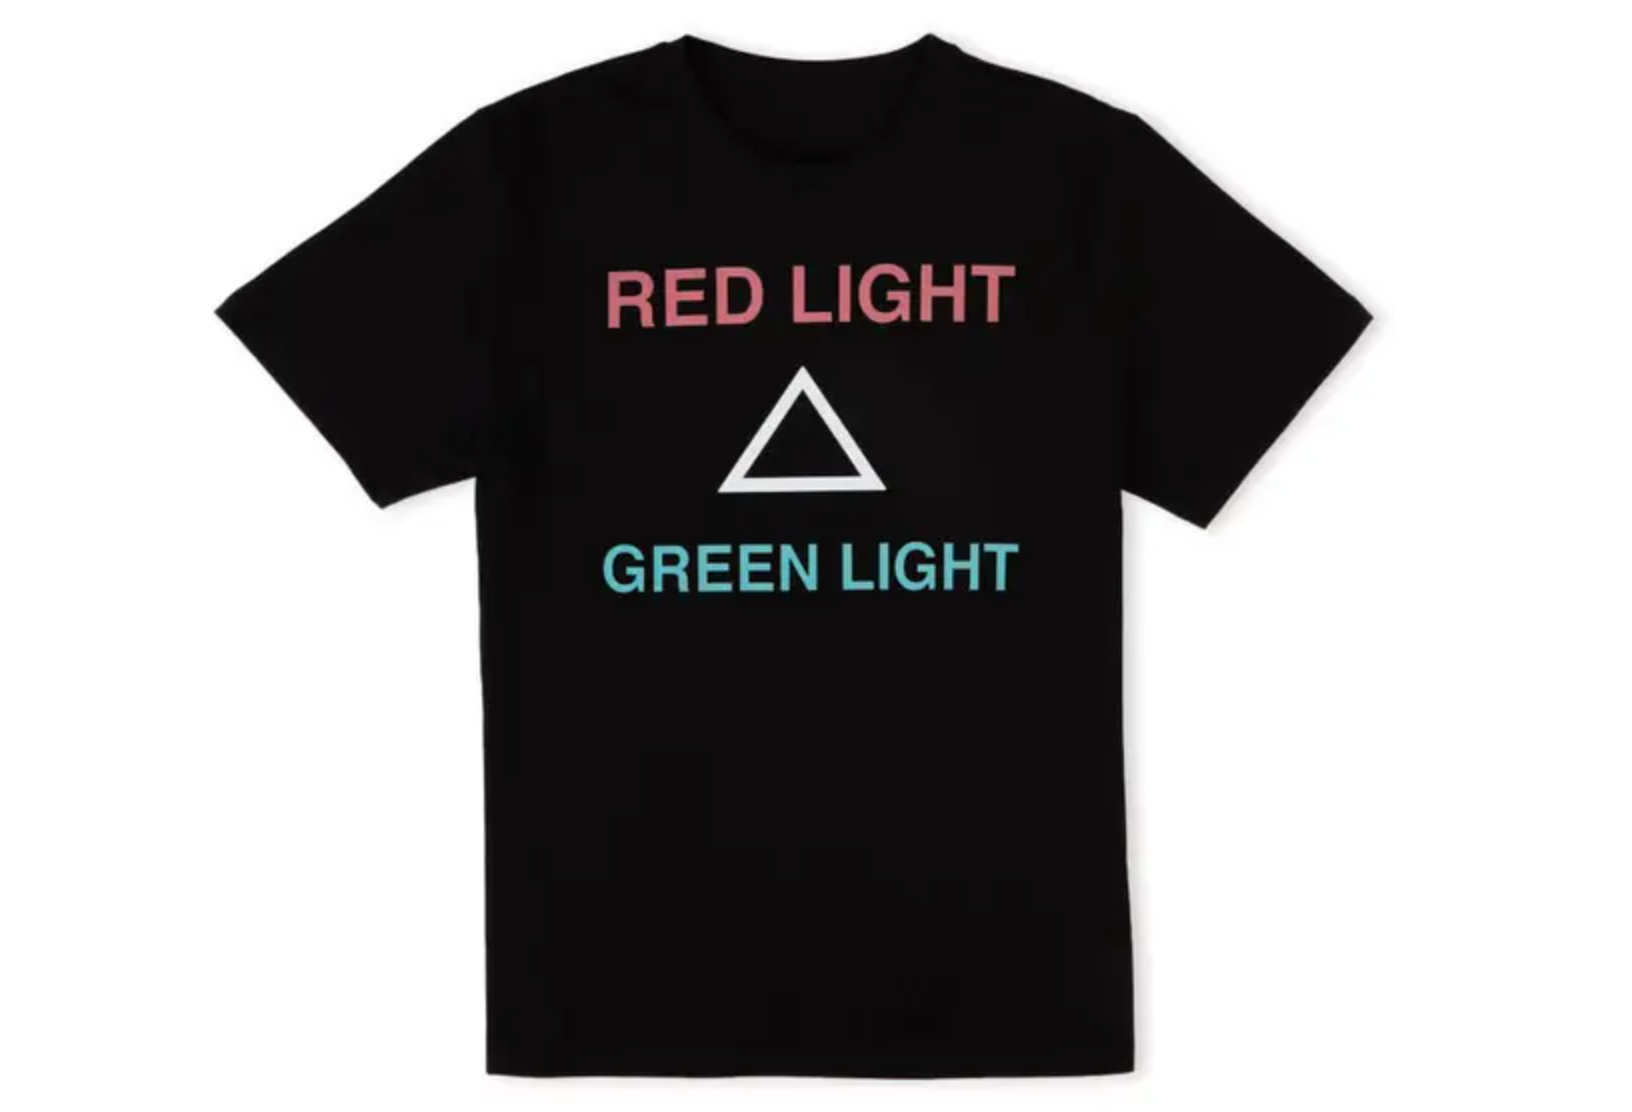 “Red Light, Green Light” shirt